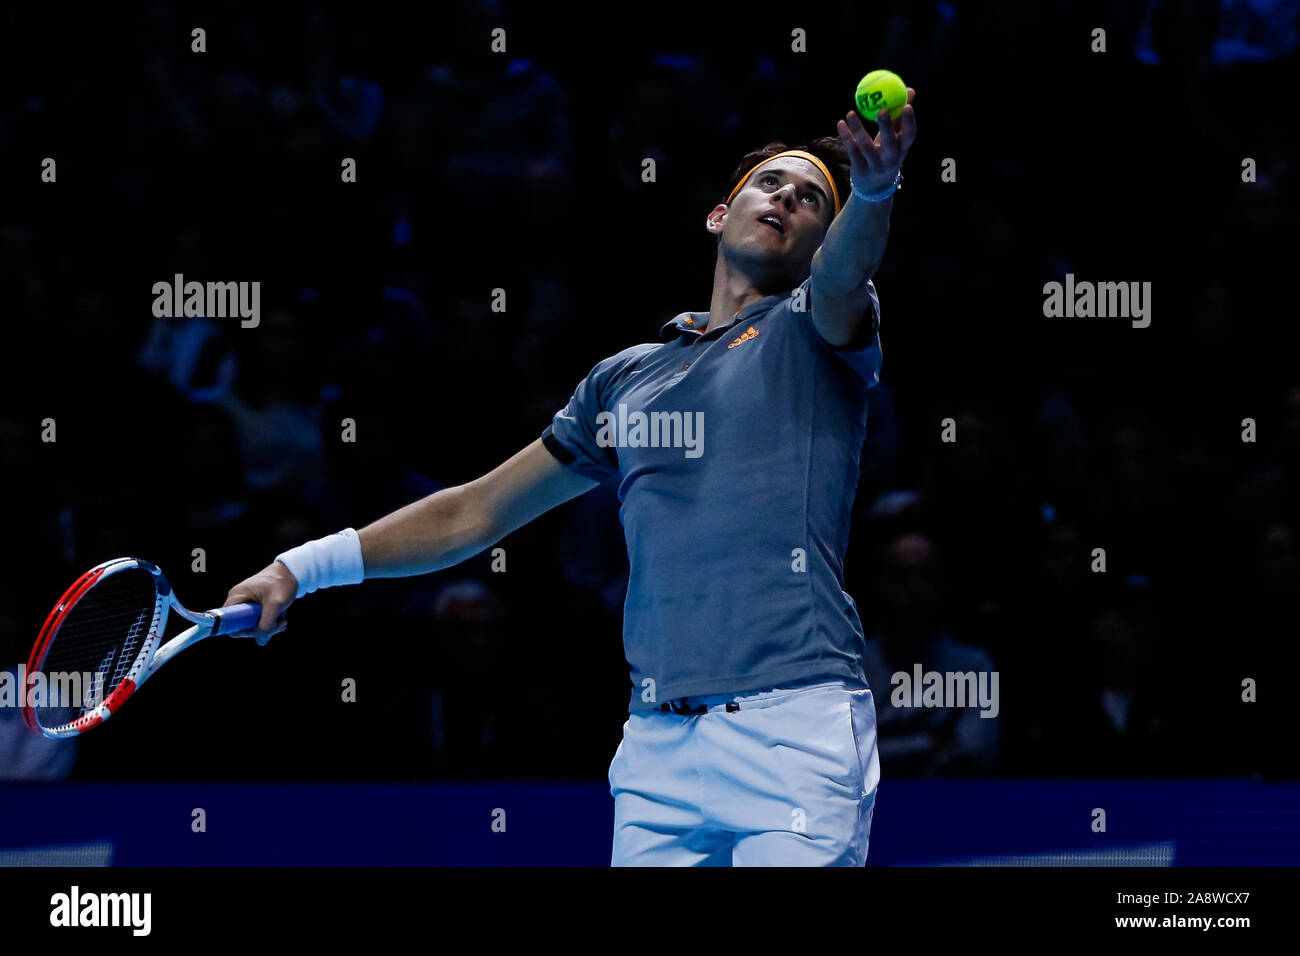 Dominic Thiem dell'Austria durante la sua partita contro Roger Federer al Giorno uno del Nitto ATP World Tour Finals presso l'Arena O2 il 10 novembre 2019 a Londra, Inghilterra Foto Stock